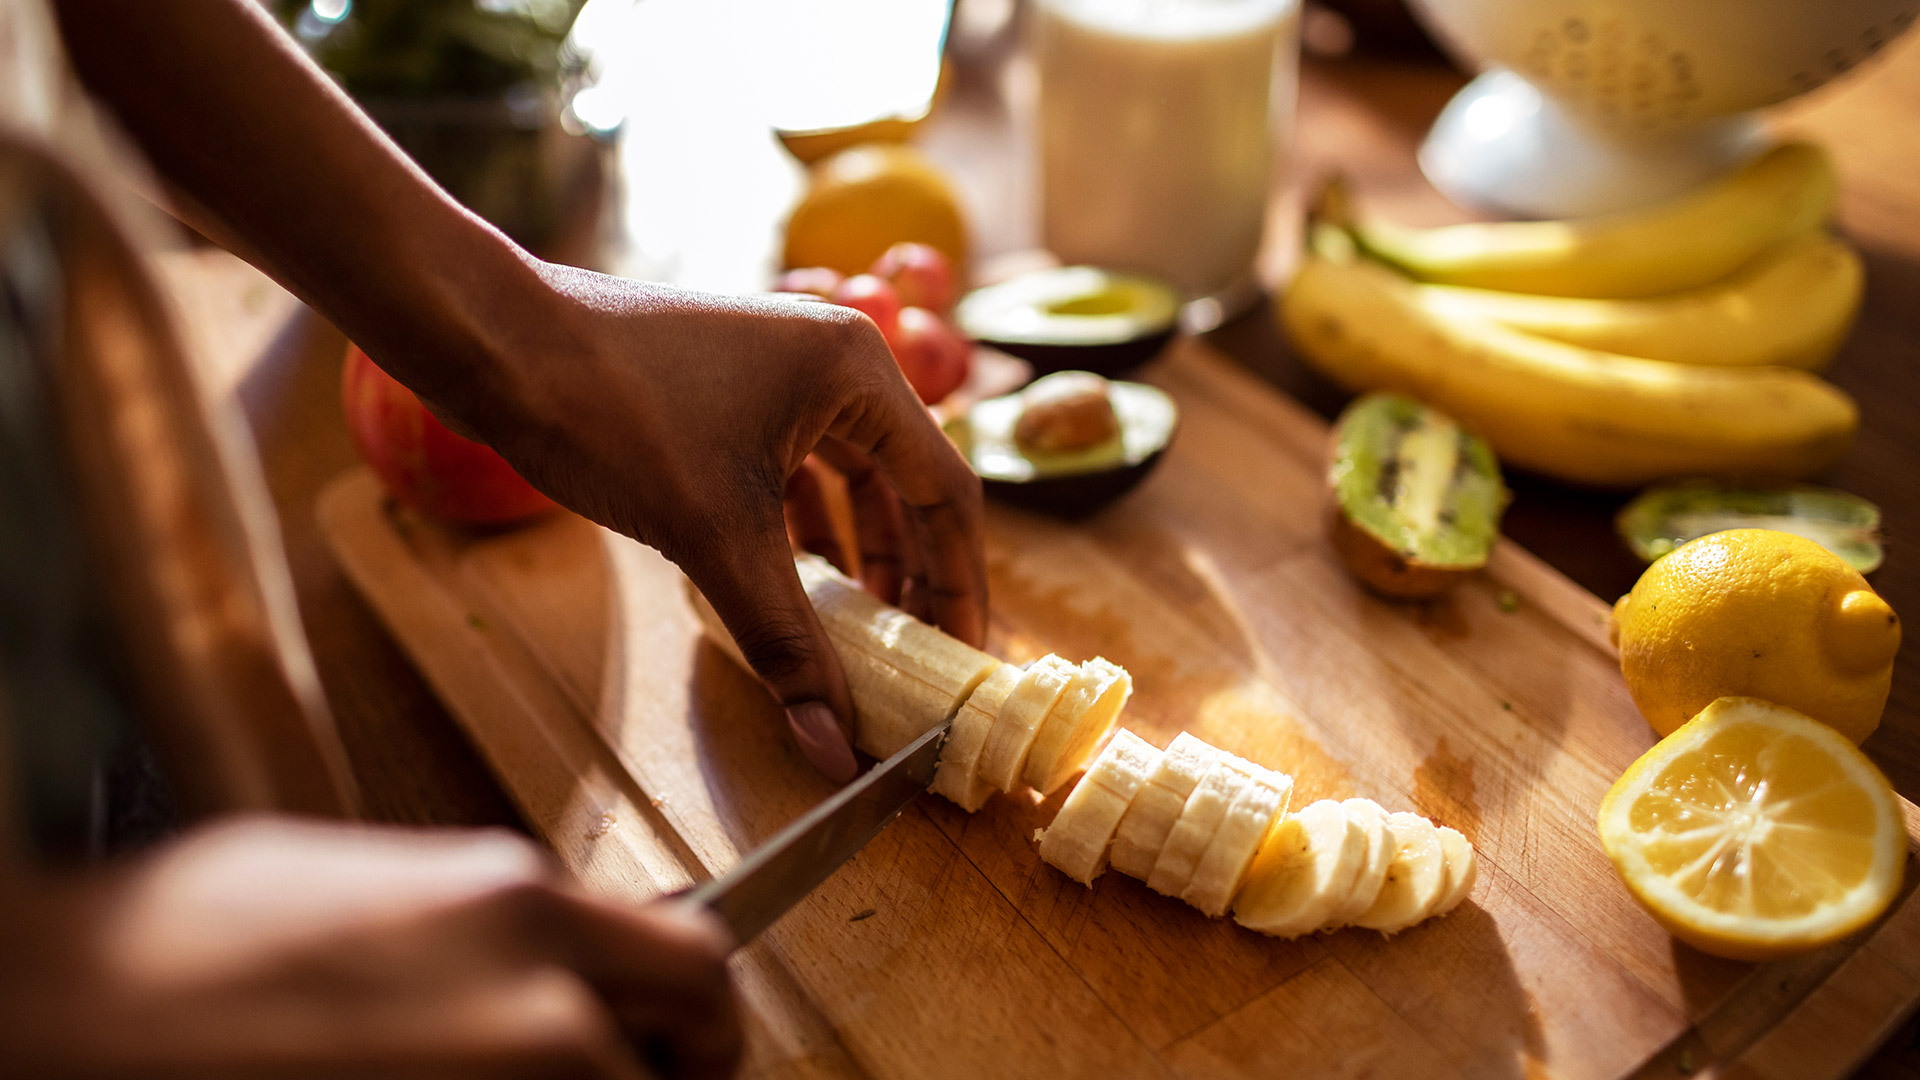 Los estudios, incluido uno publicado en 2014 en el International Food Research Journal, han demostrado que los niveles de vitamina C aumentan con el proceso de maduración, pero disminuyen a medida que la banana se vuelve demasiado madura (Getty Images)